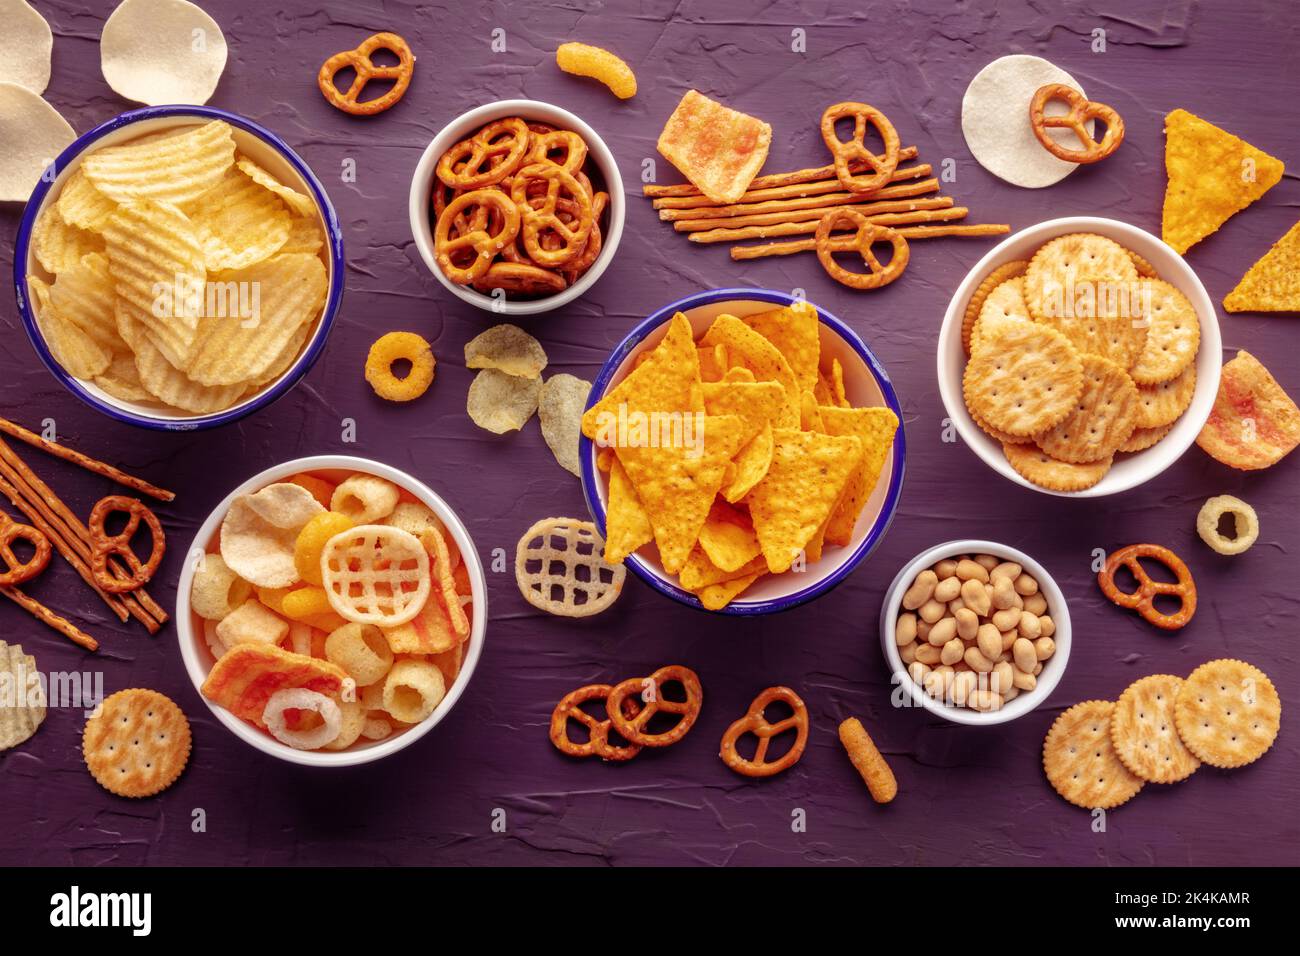 Salzige Snacks. Party-Food-Mix. Kartoffel- und Tortilla-Chips, Cracker und andere Vorspeisen in Schüsseln, über dem Kopf flach auf einem violetten Hintergrund geschossen Stockfoto